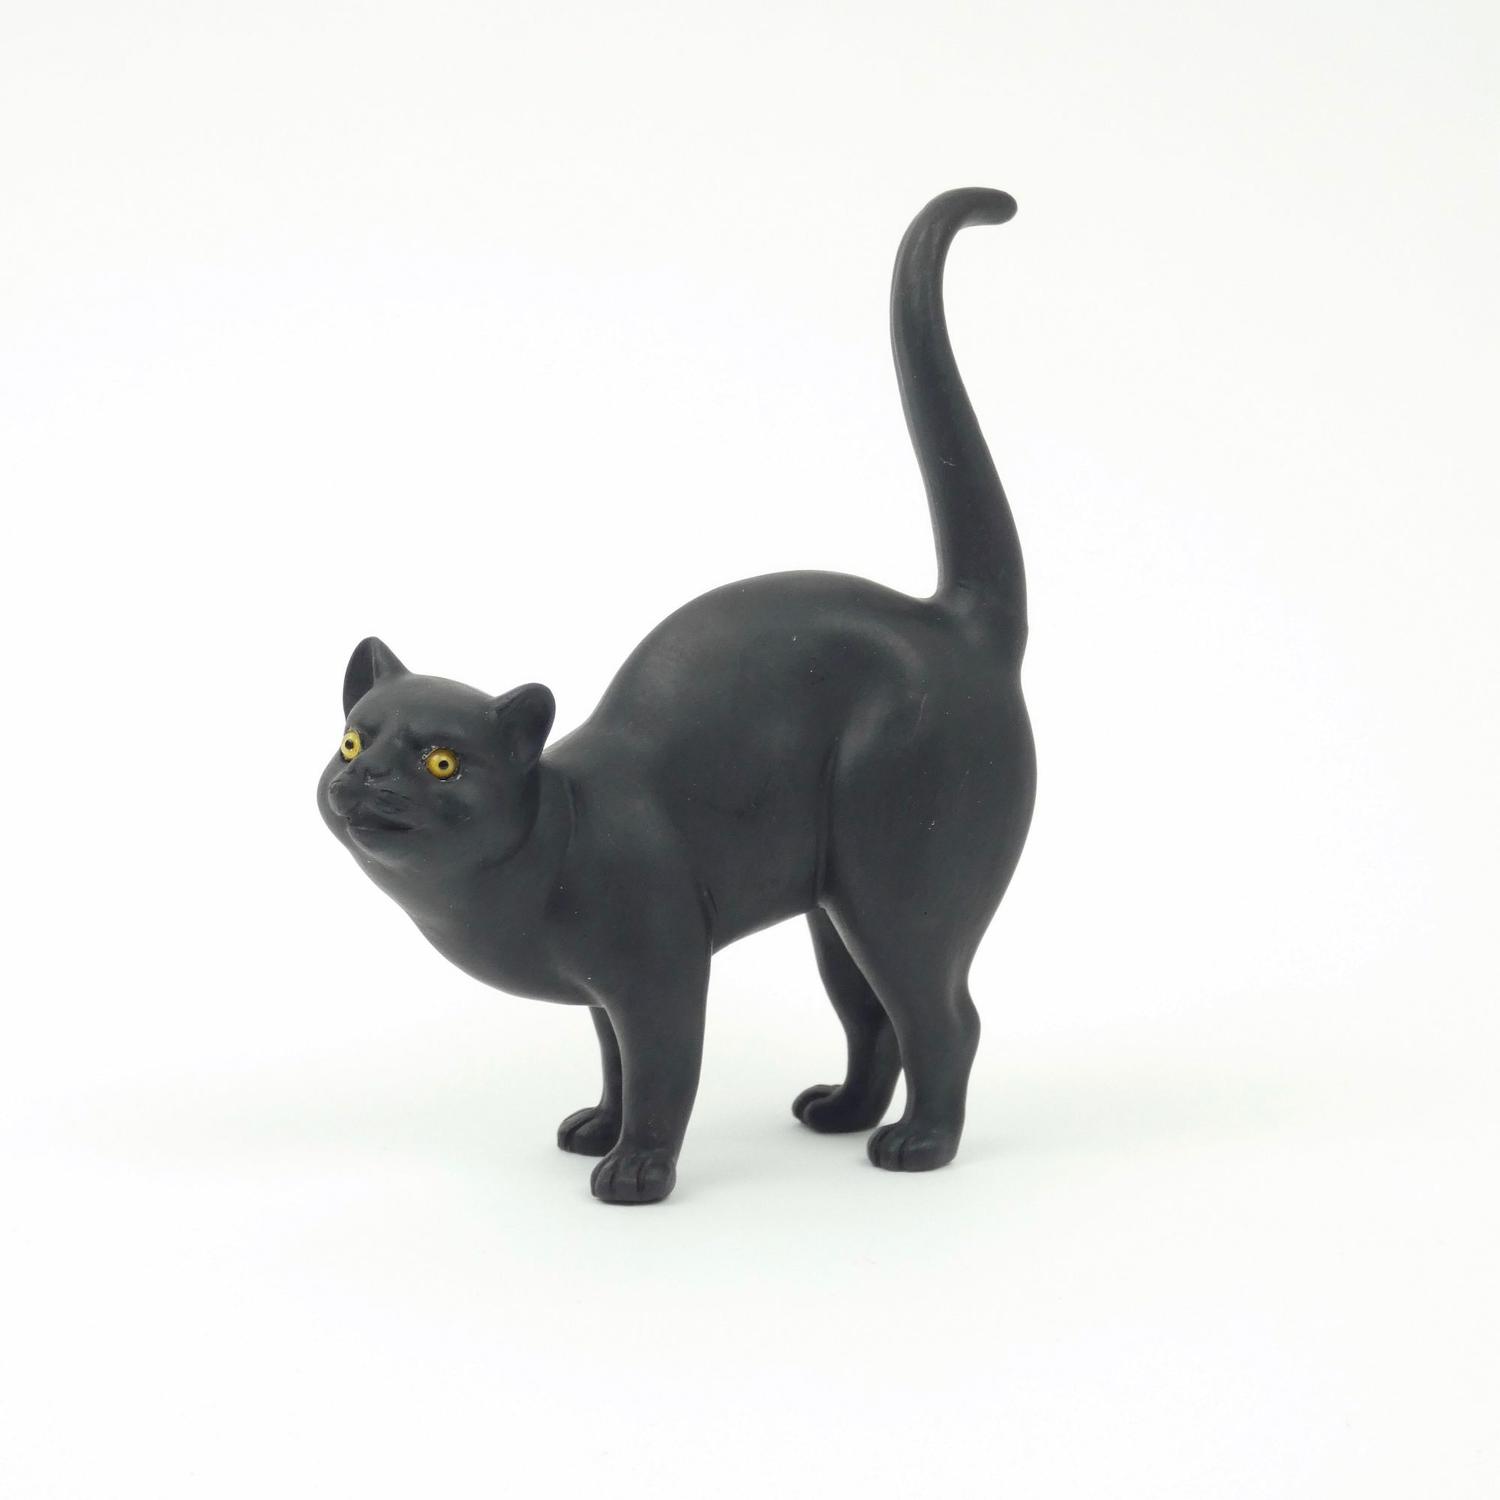 Basalt cat designed by Ernest Light